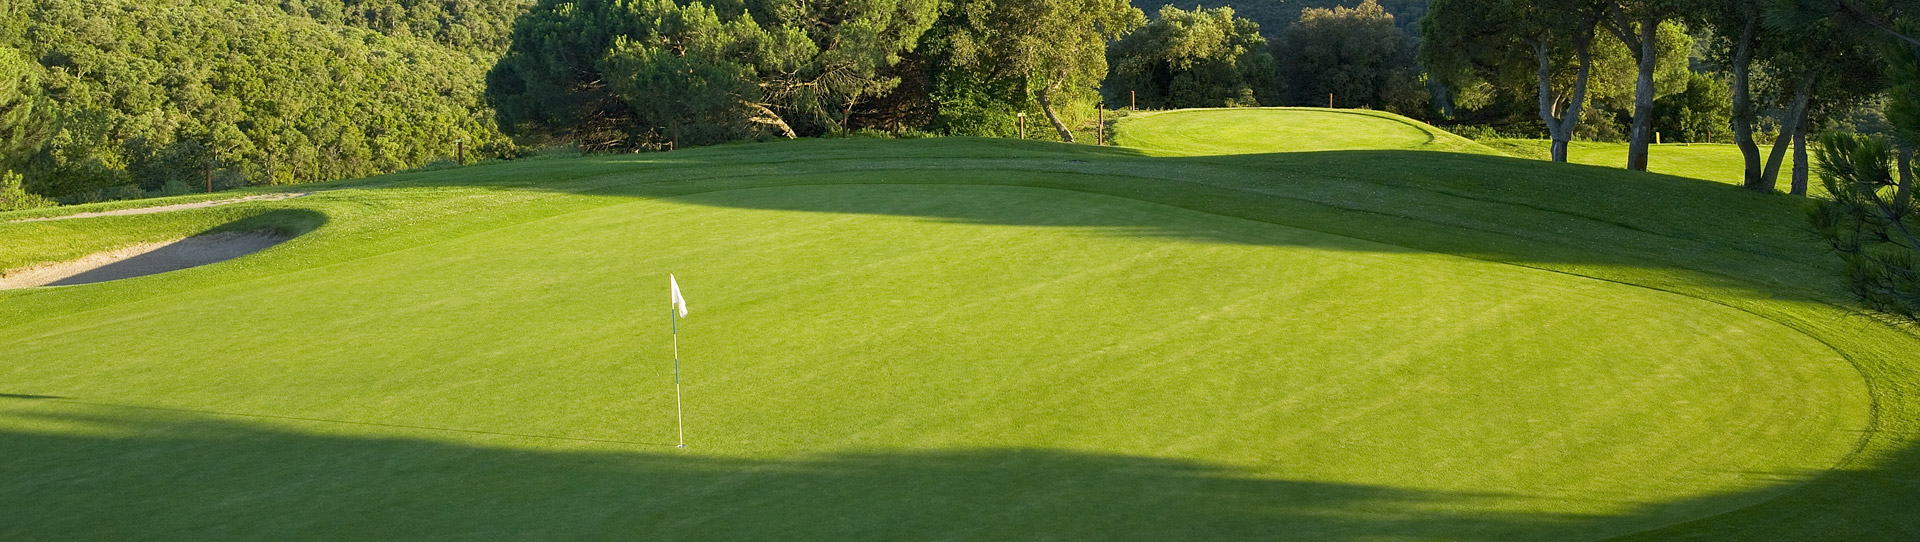 Spain golf courses - Golf d Aro - Photo 2